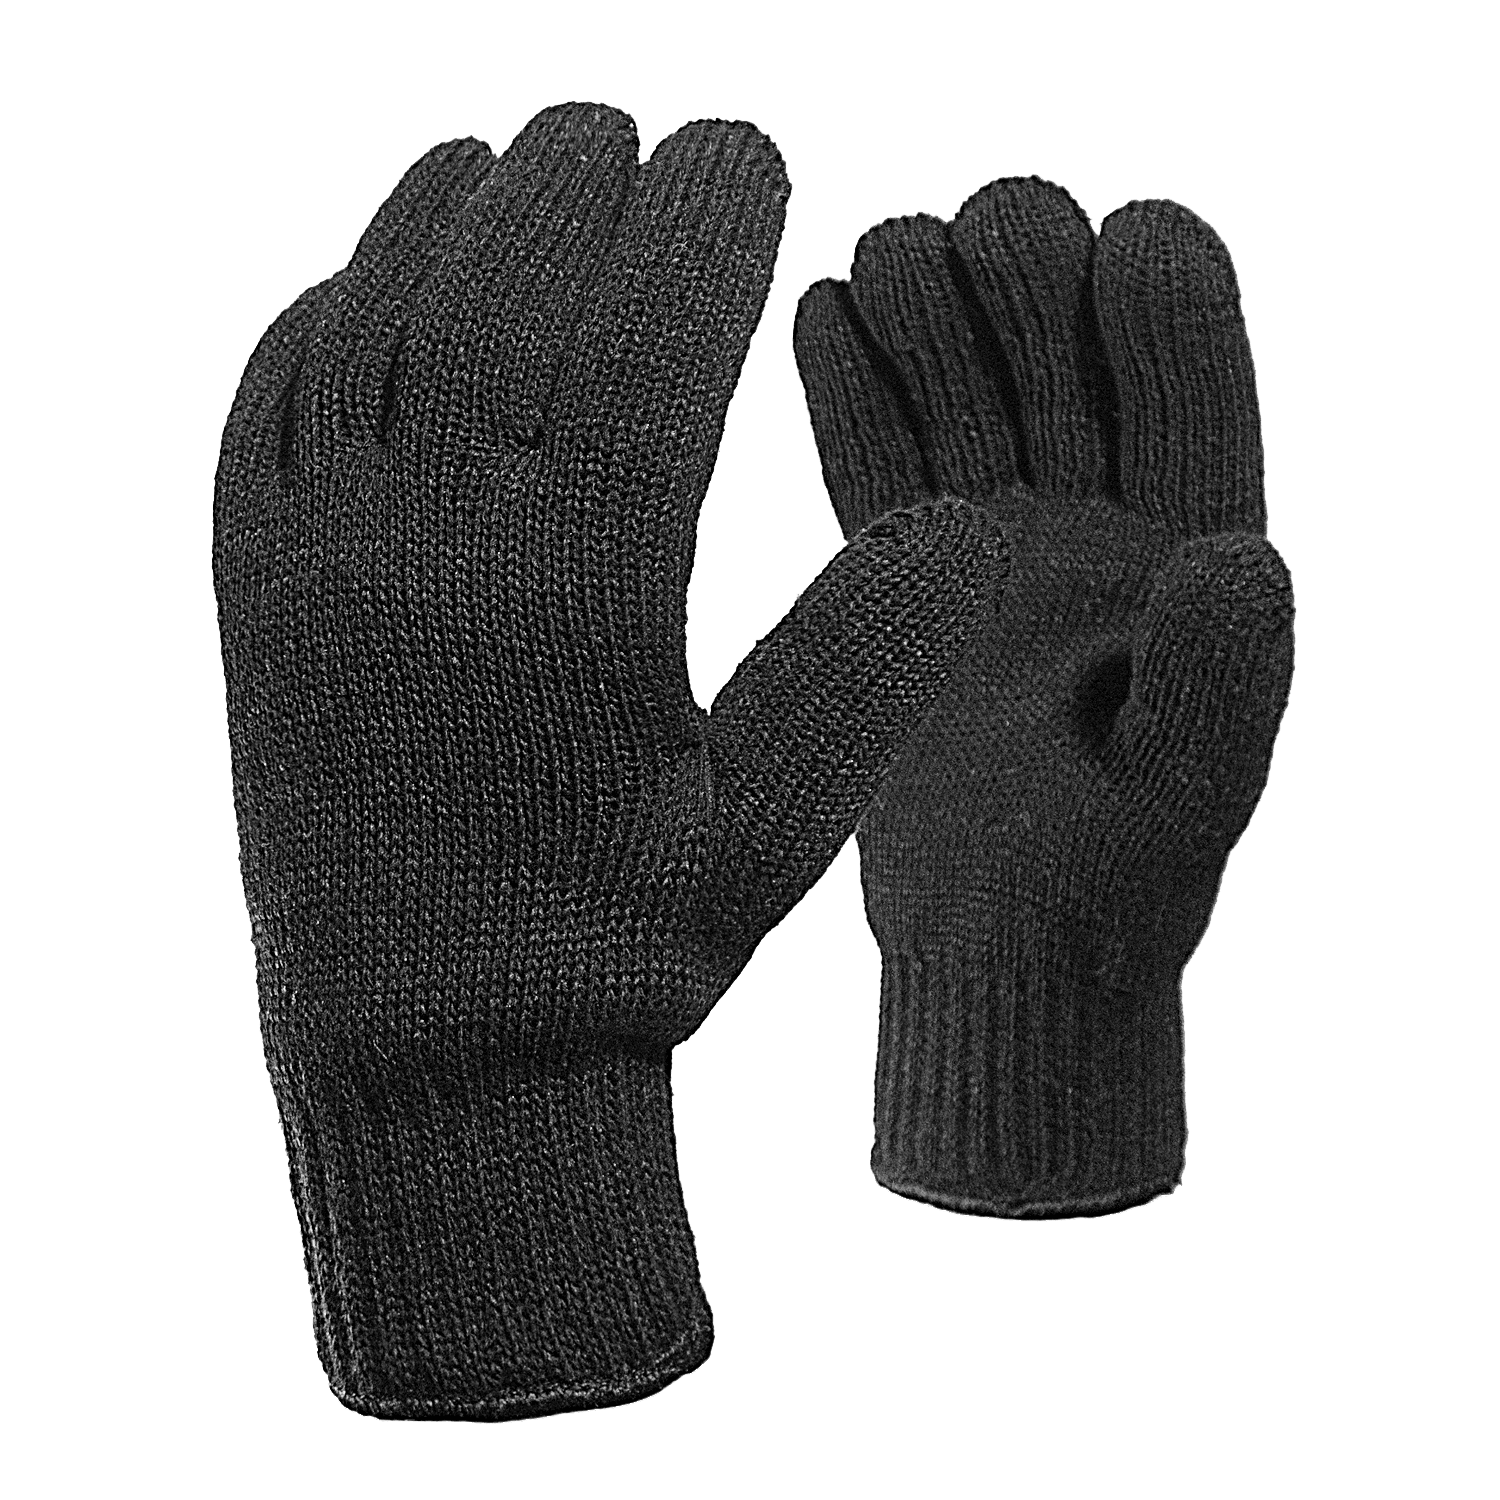 Двойные полушерстяные перчатки (30% шерсть + 70% акрил) ❄